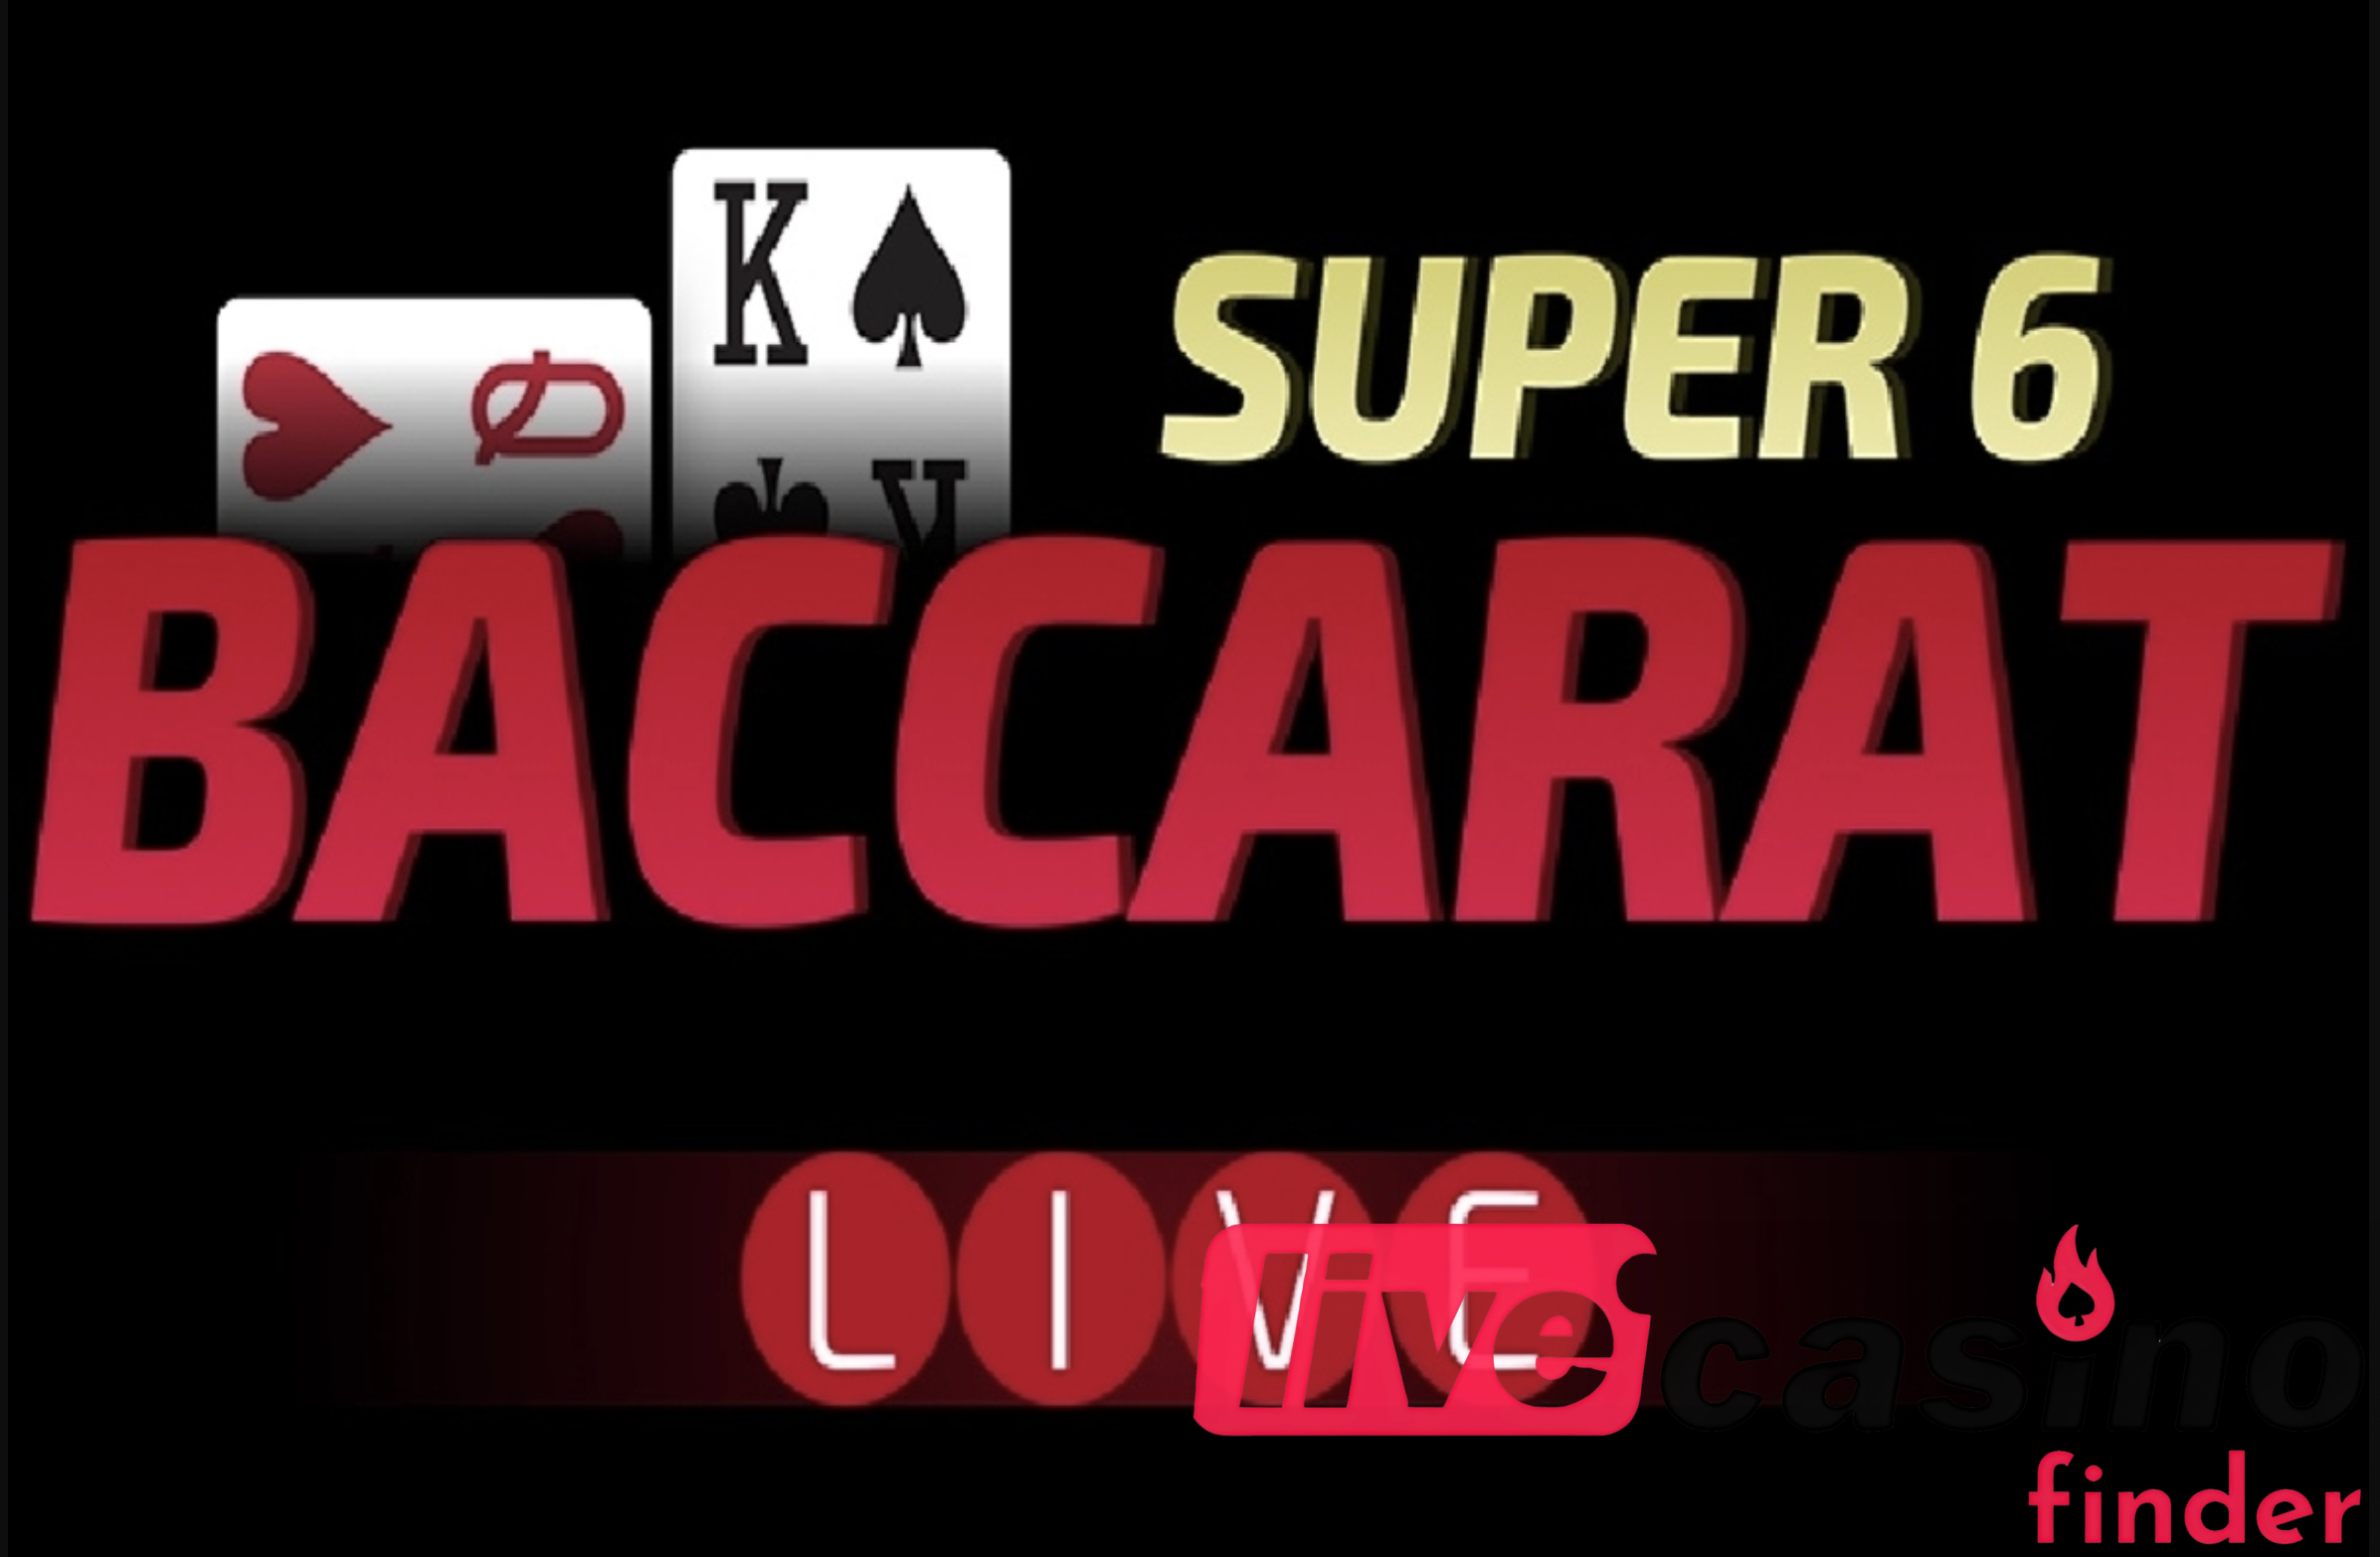 Live Super 6 Baccarat Game.